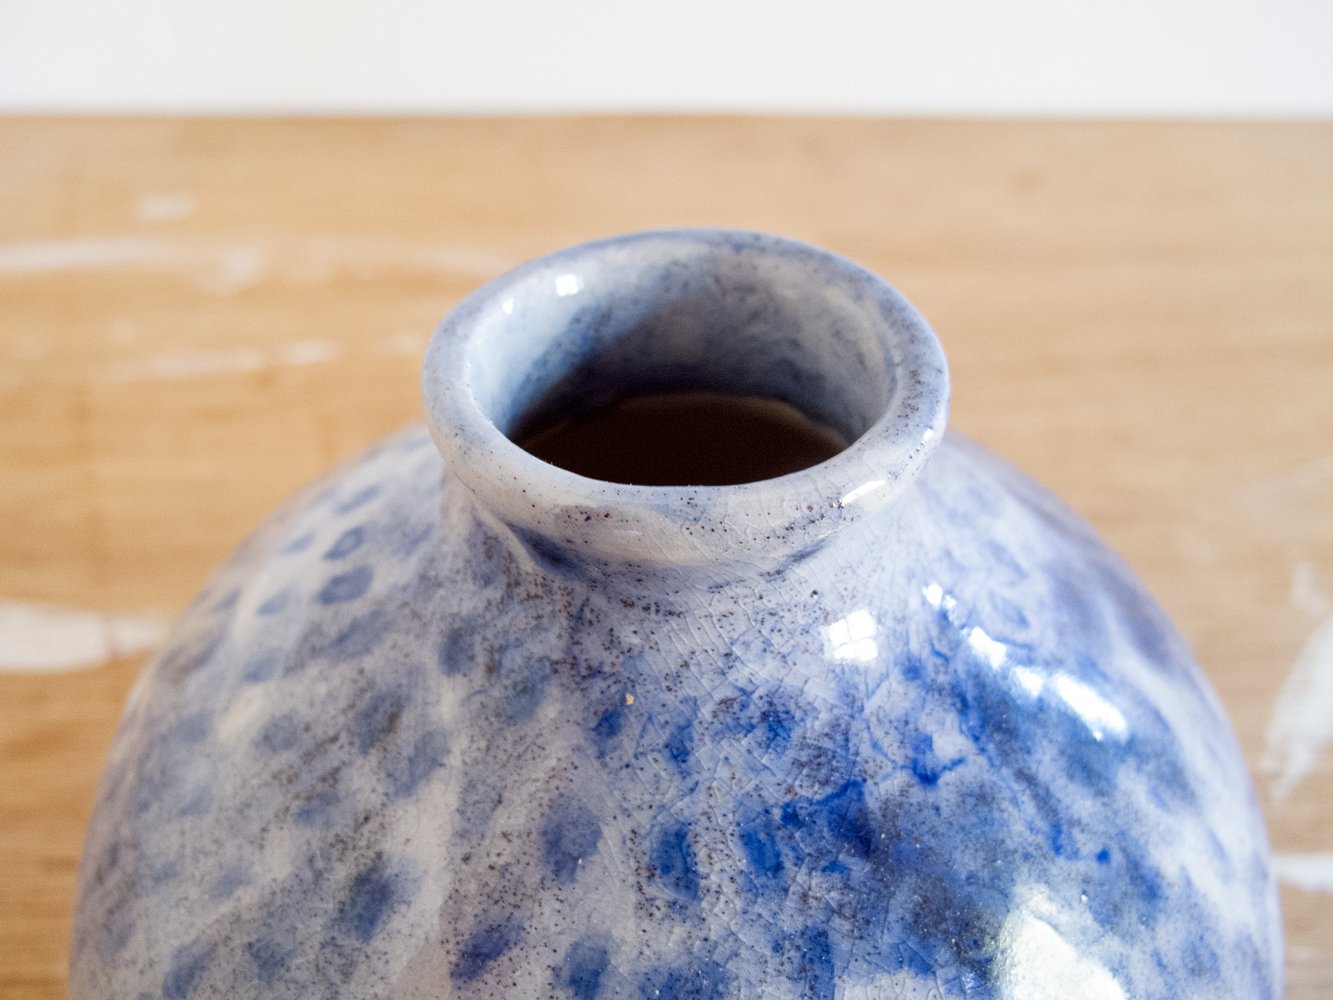 Image of little blue vase